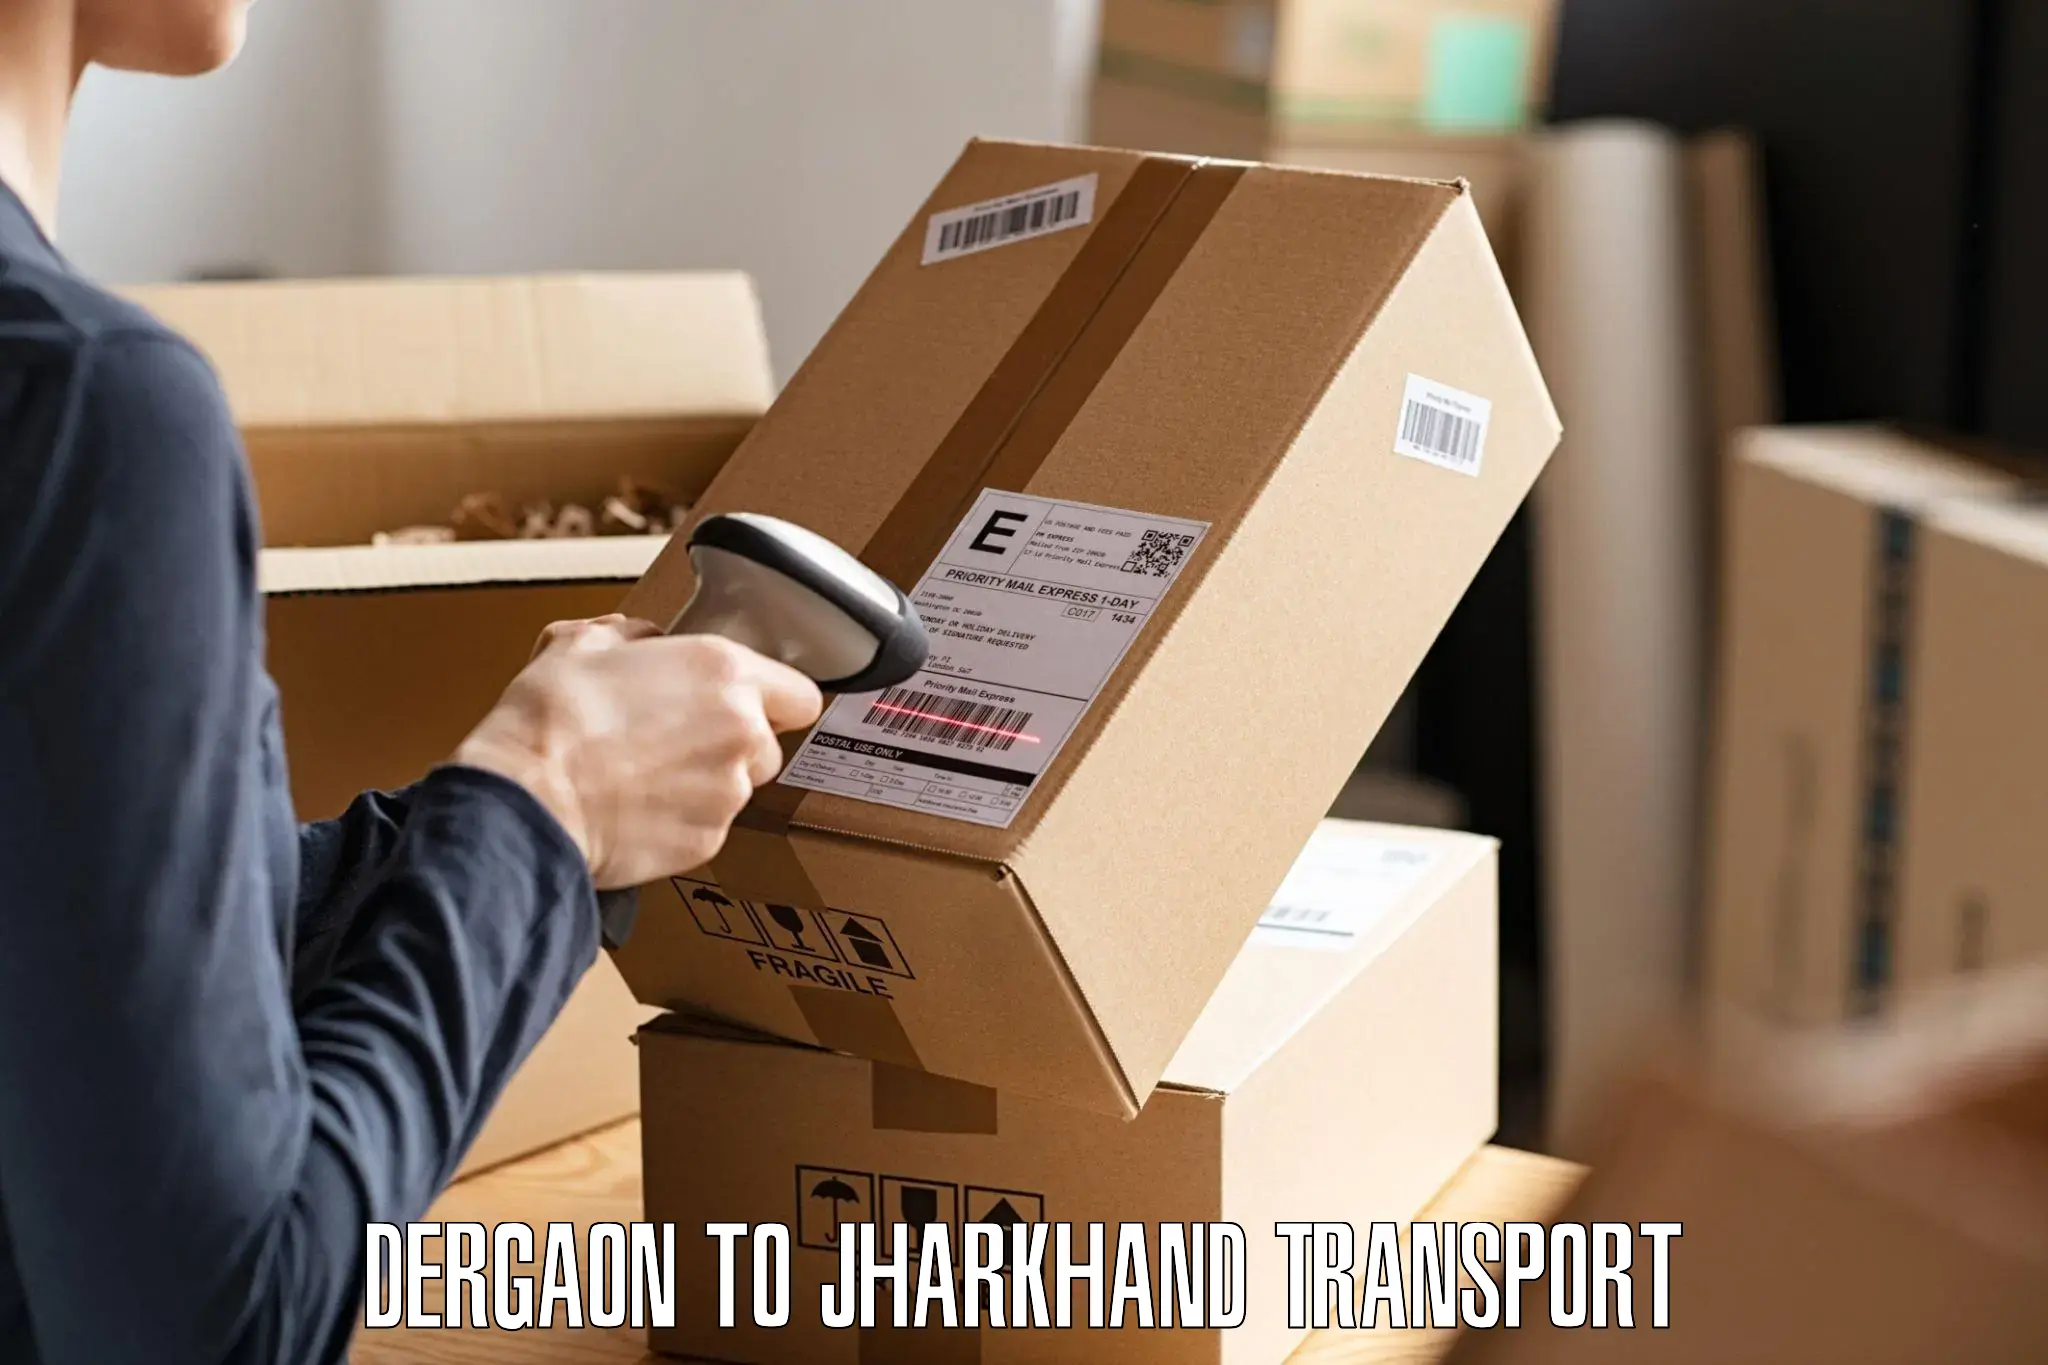 Transport shared services Dergaon to Hazaribagh